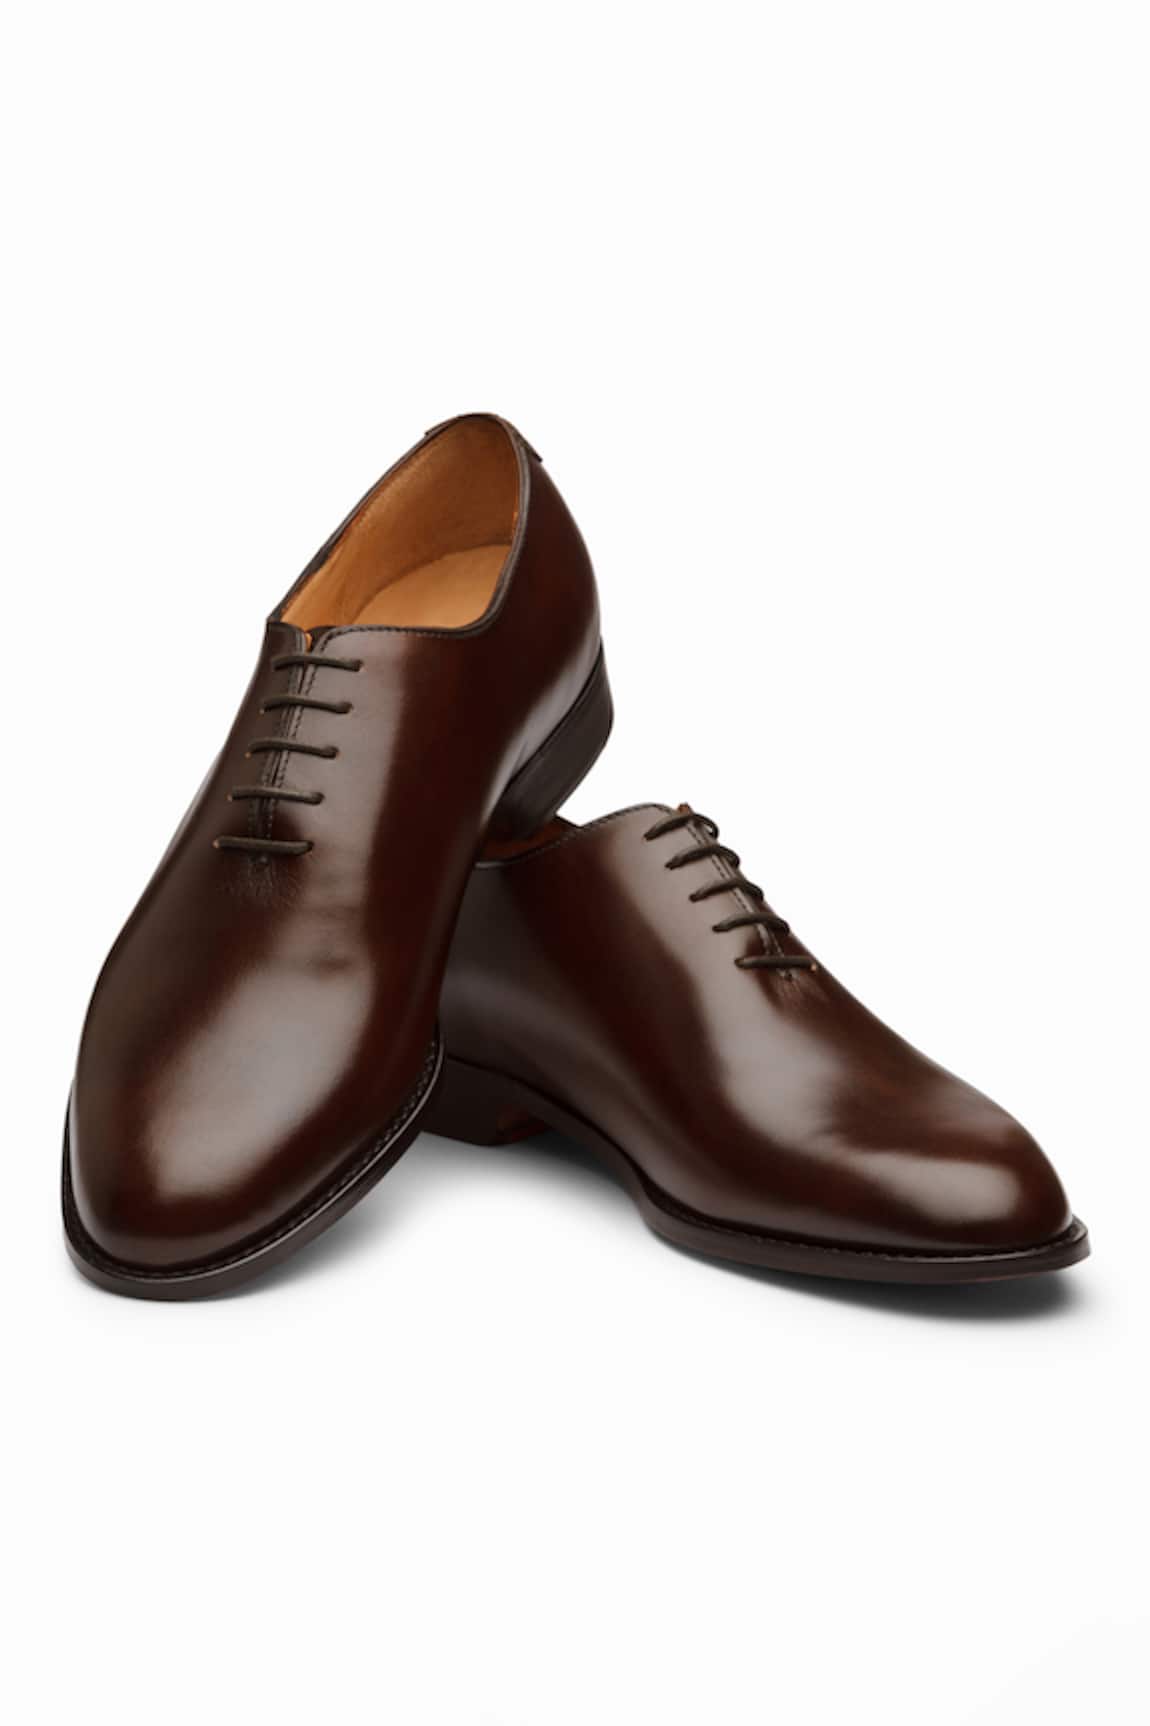 3DM LIFESTYLE Plain Wholecut Oxford Leather Shoes